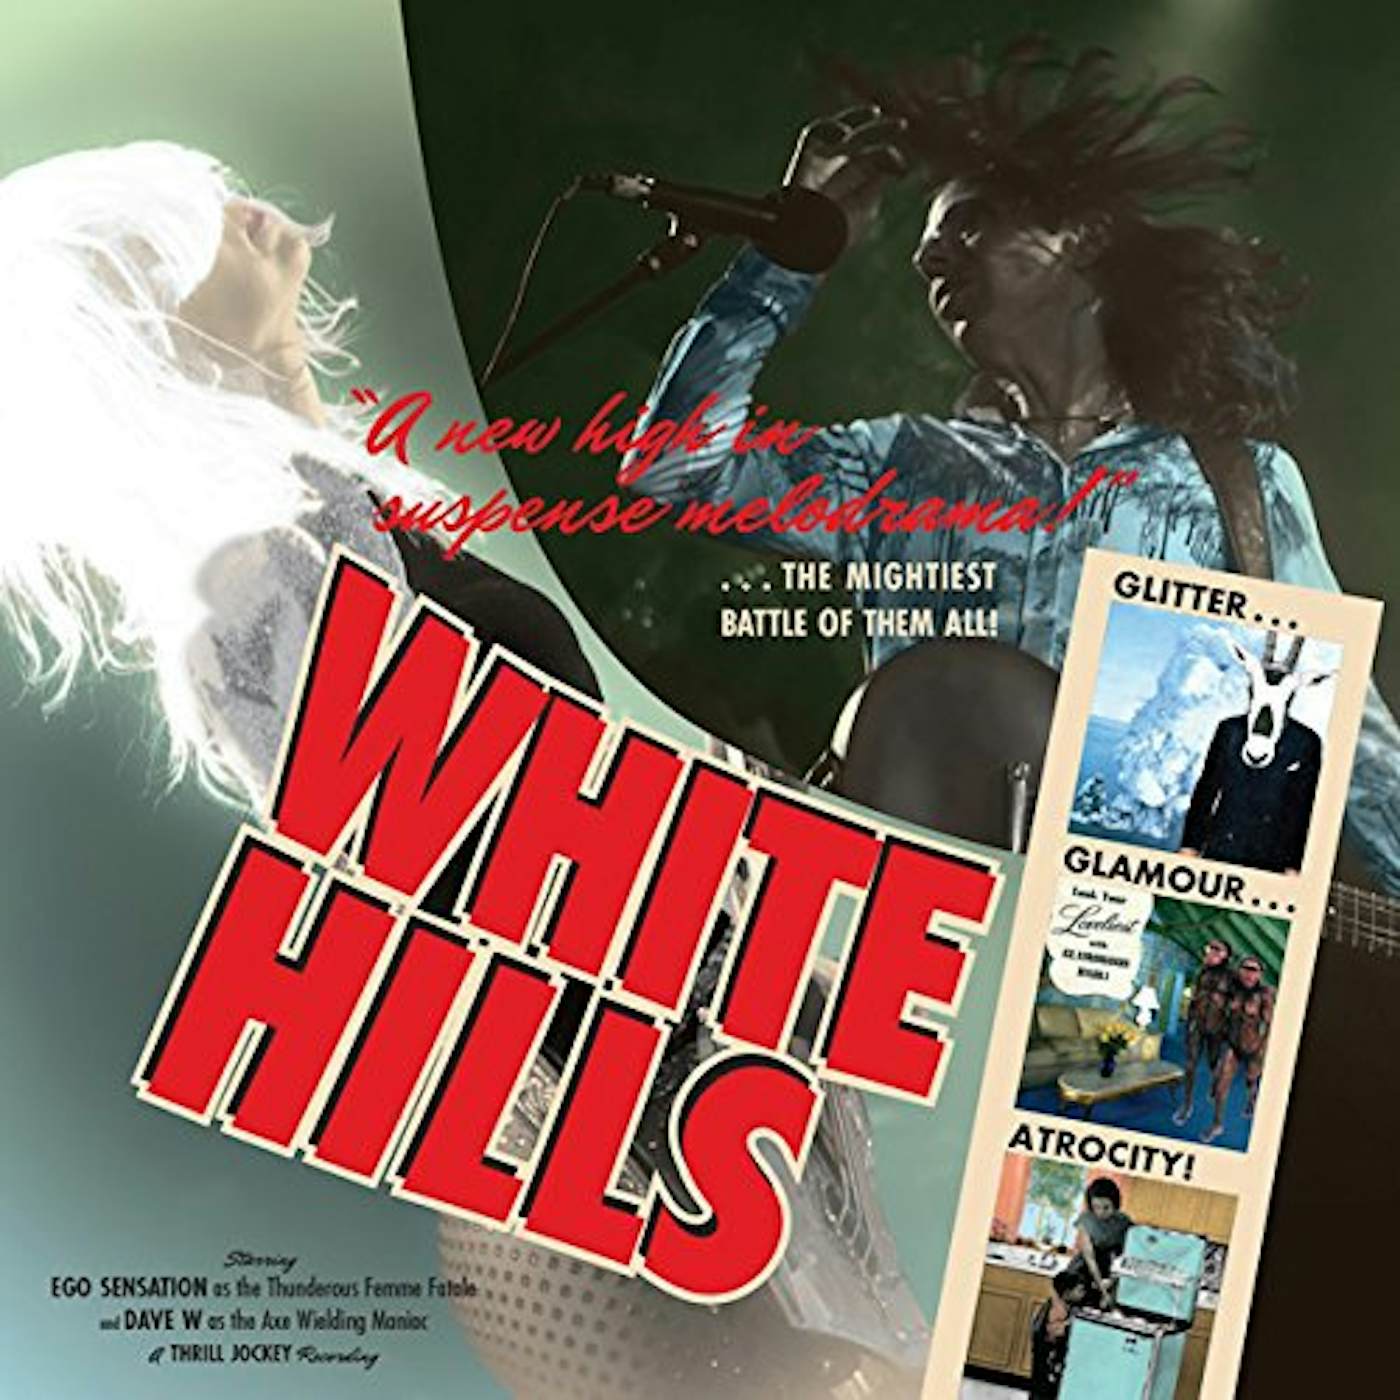 White Hills GLITTER GLAMOUR ATROCITY CD